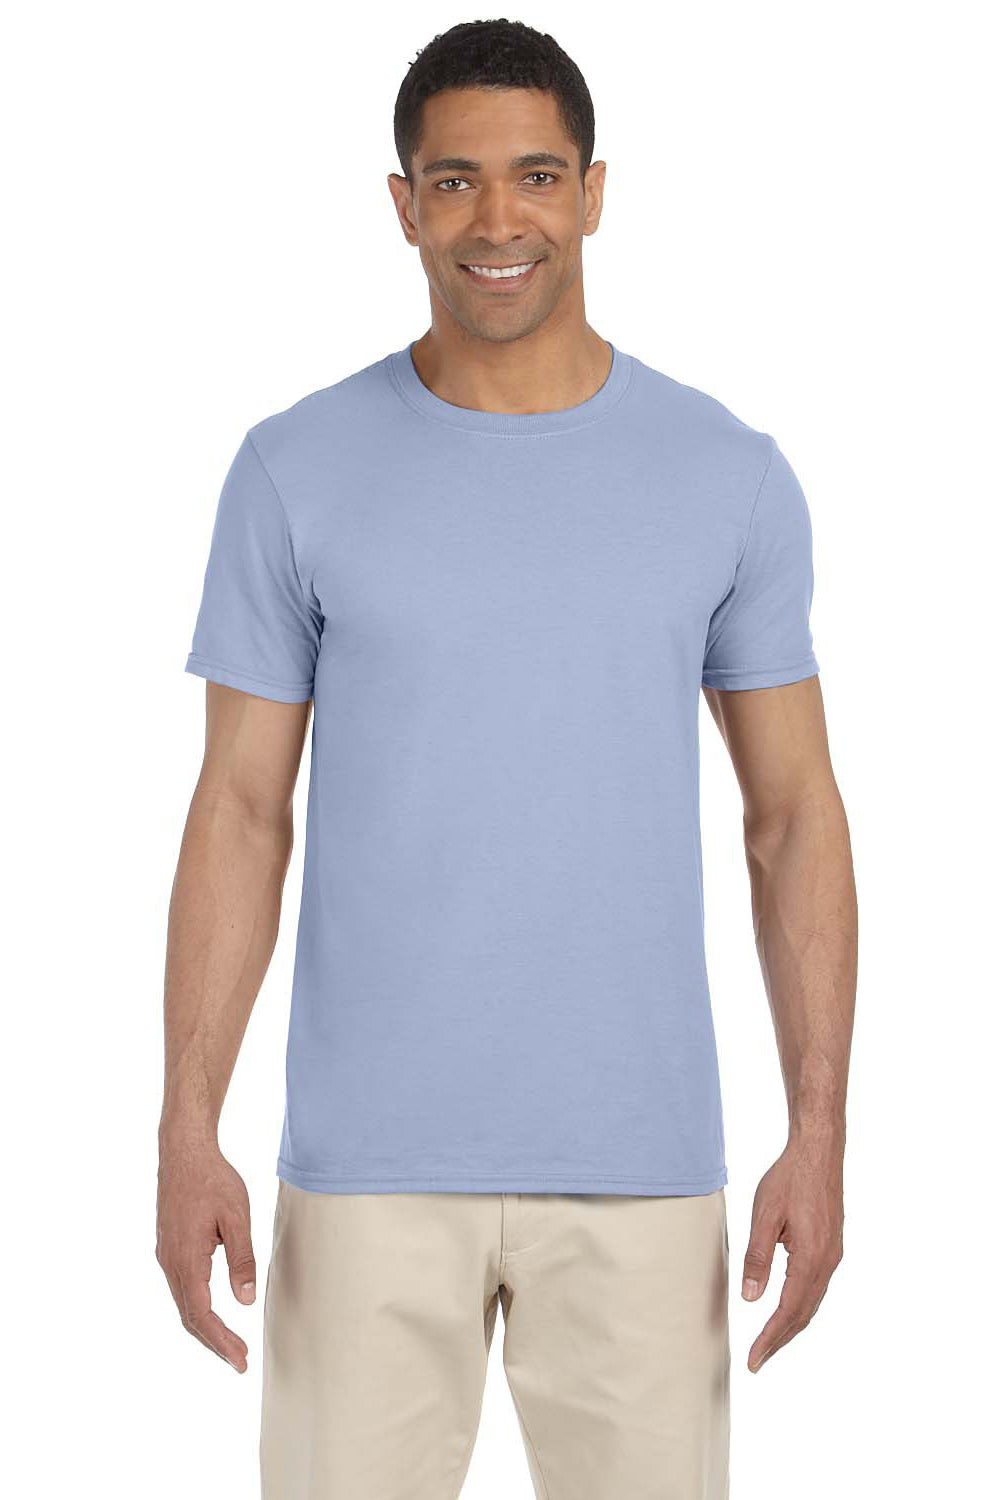 Gildan G640 Mens Softstyle Short Sleeve Crewneck T-Shirt Light Blue Front